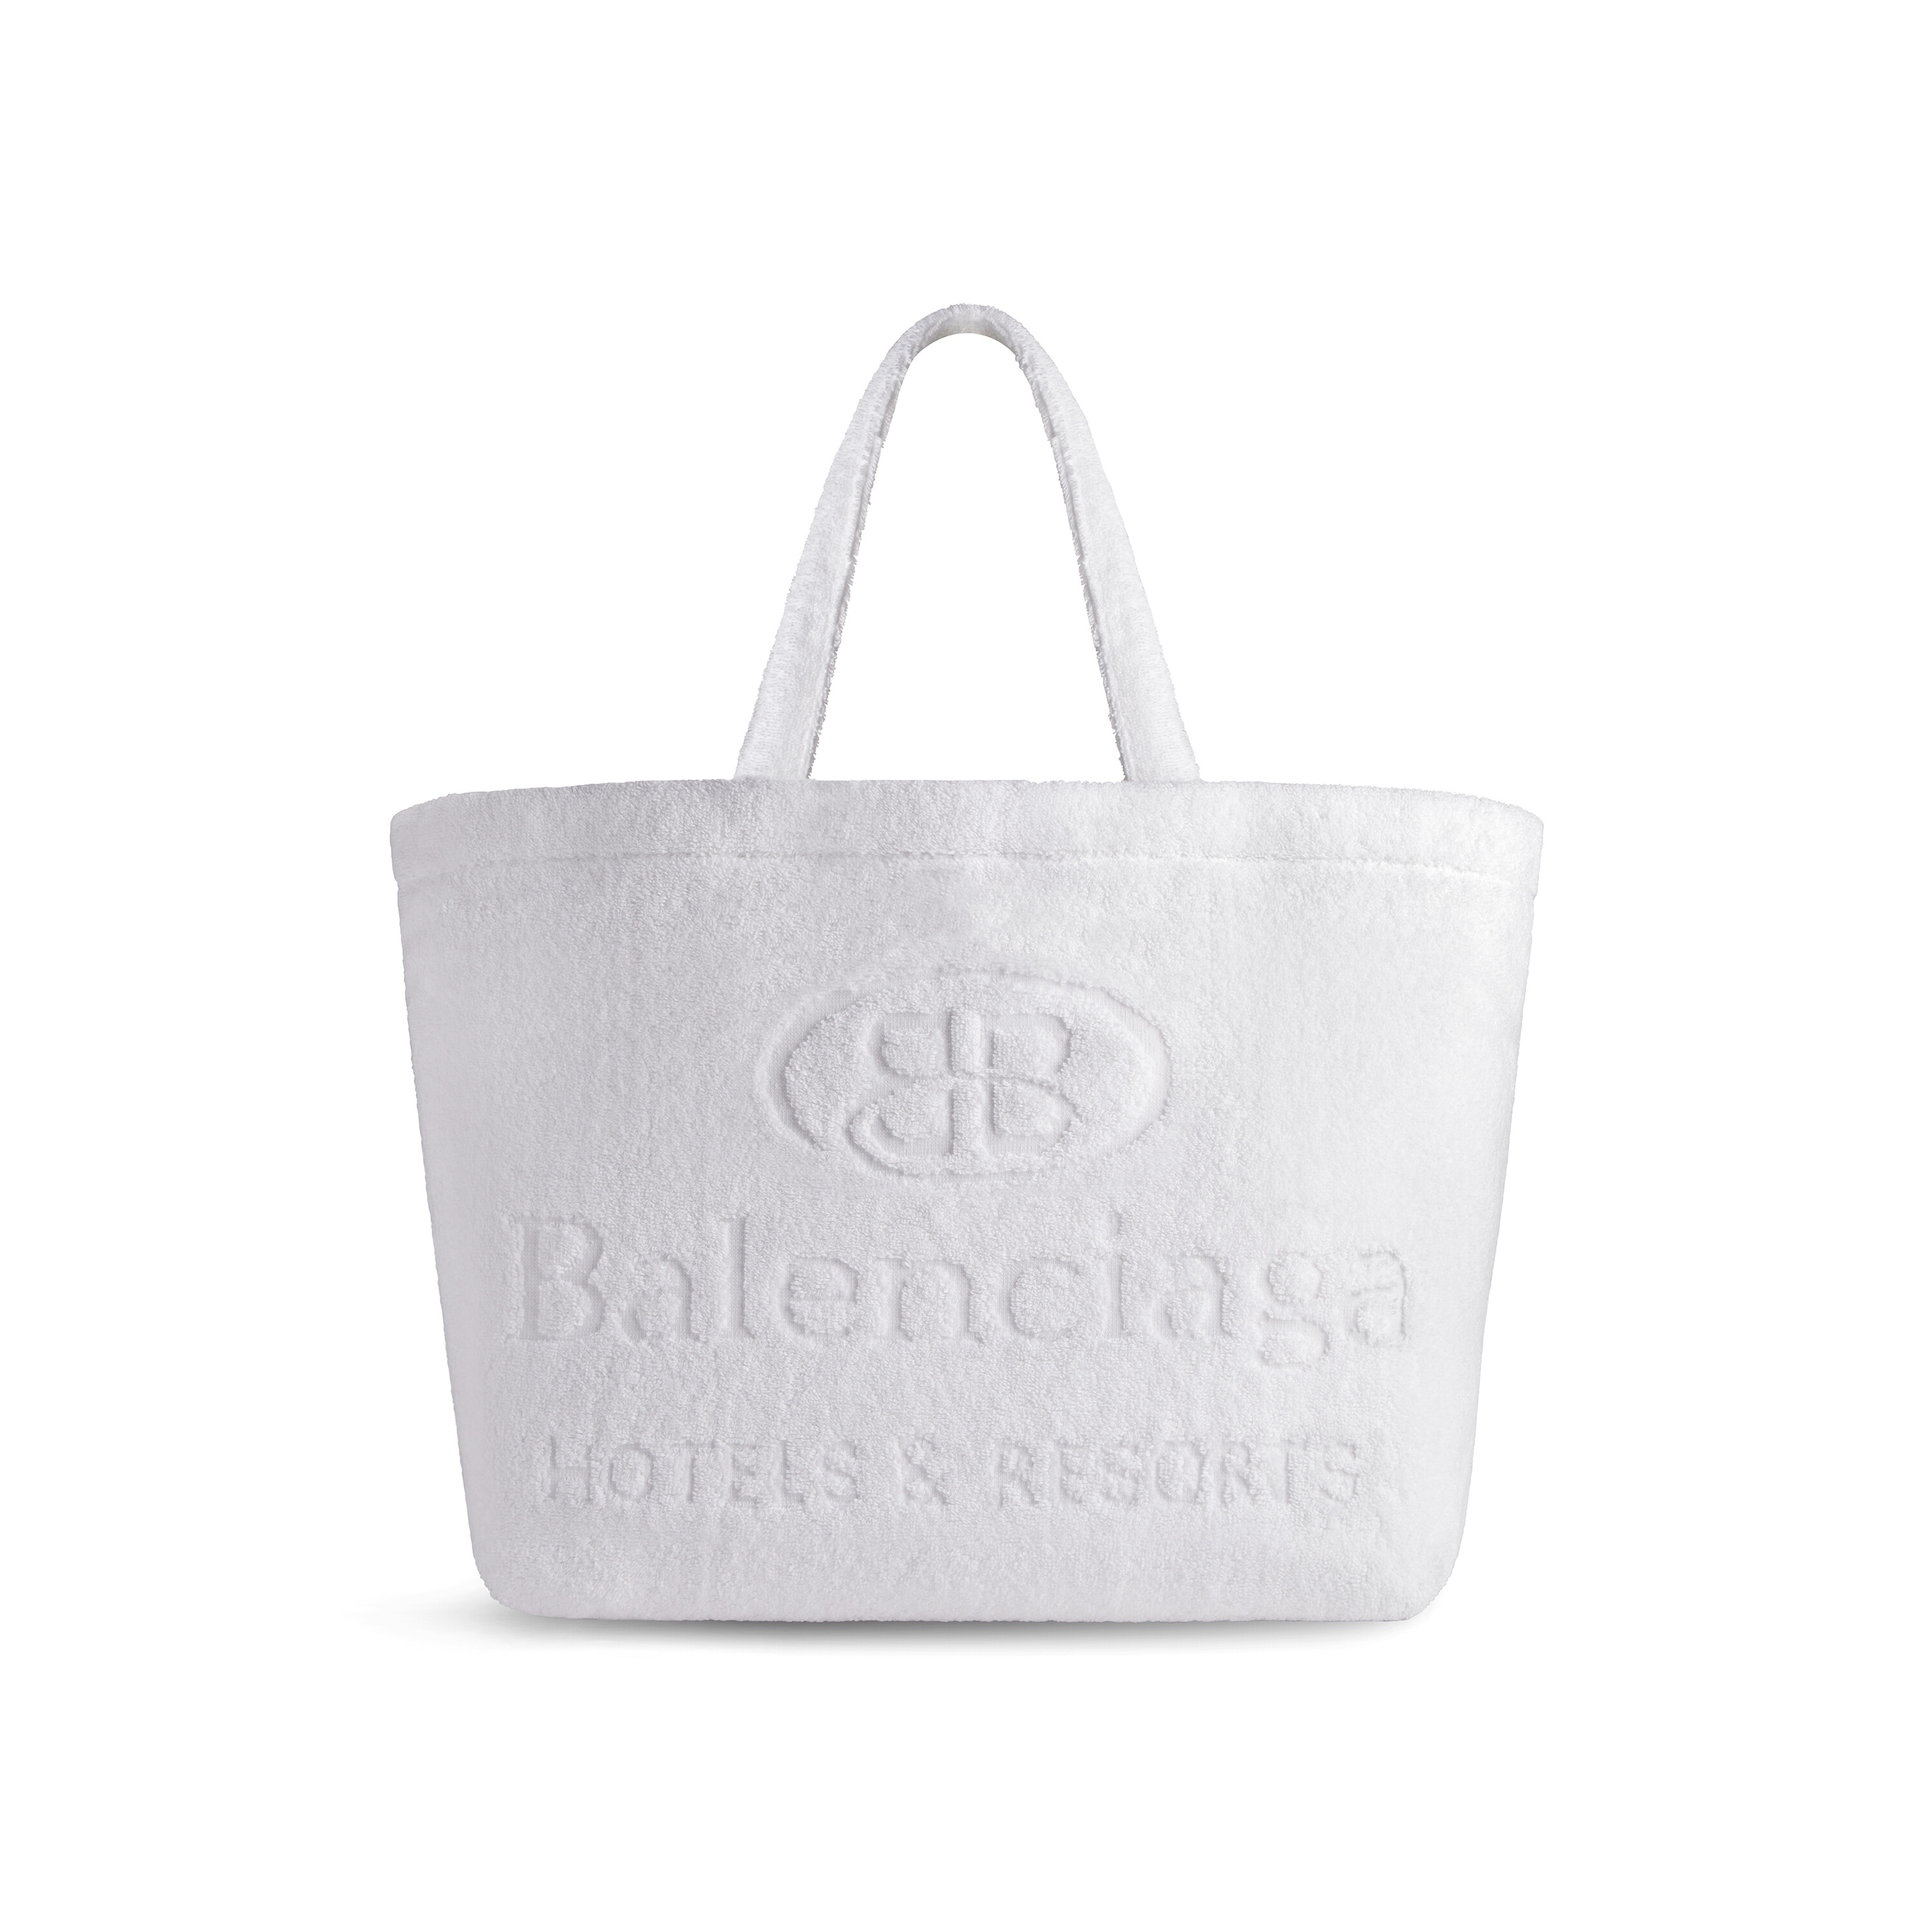 Balenciaga bags for Women | SSENSE